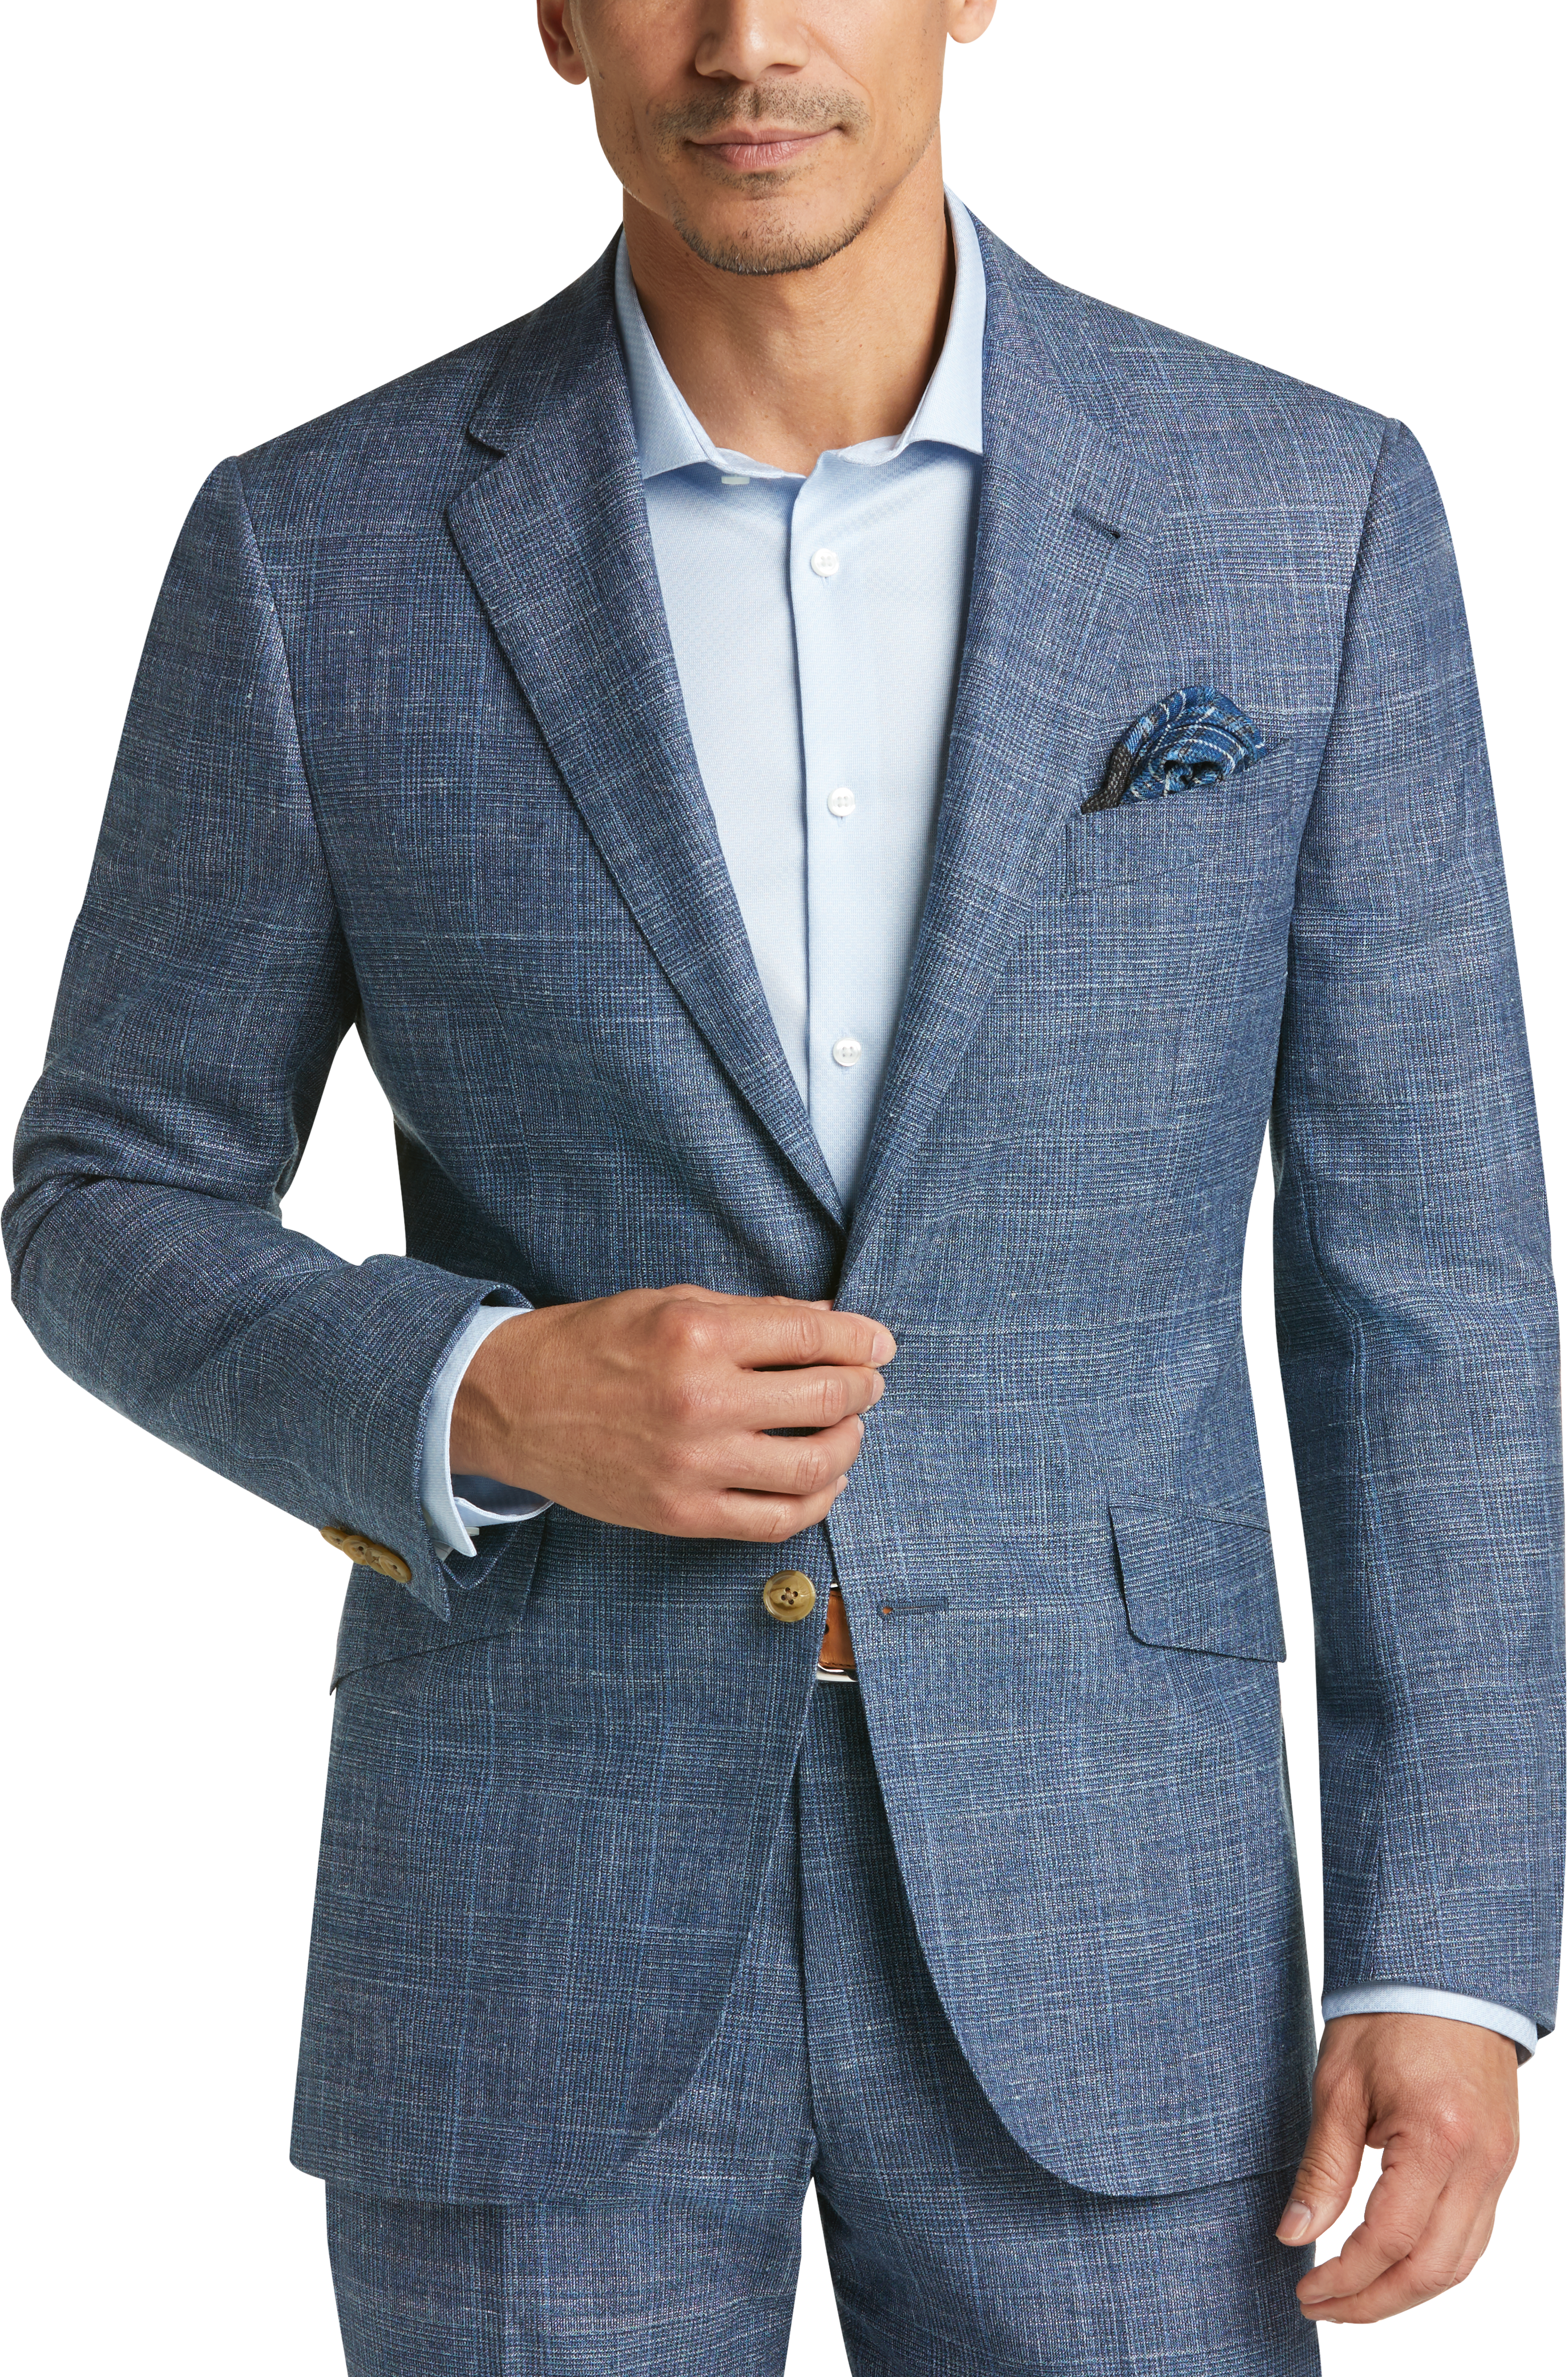 Joseph Abboud Limited Edition Blue Plaid Slim Fit Suit - Men's Sale ...